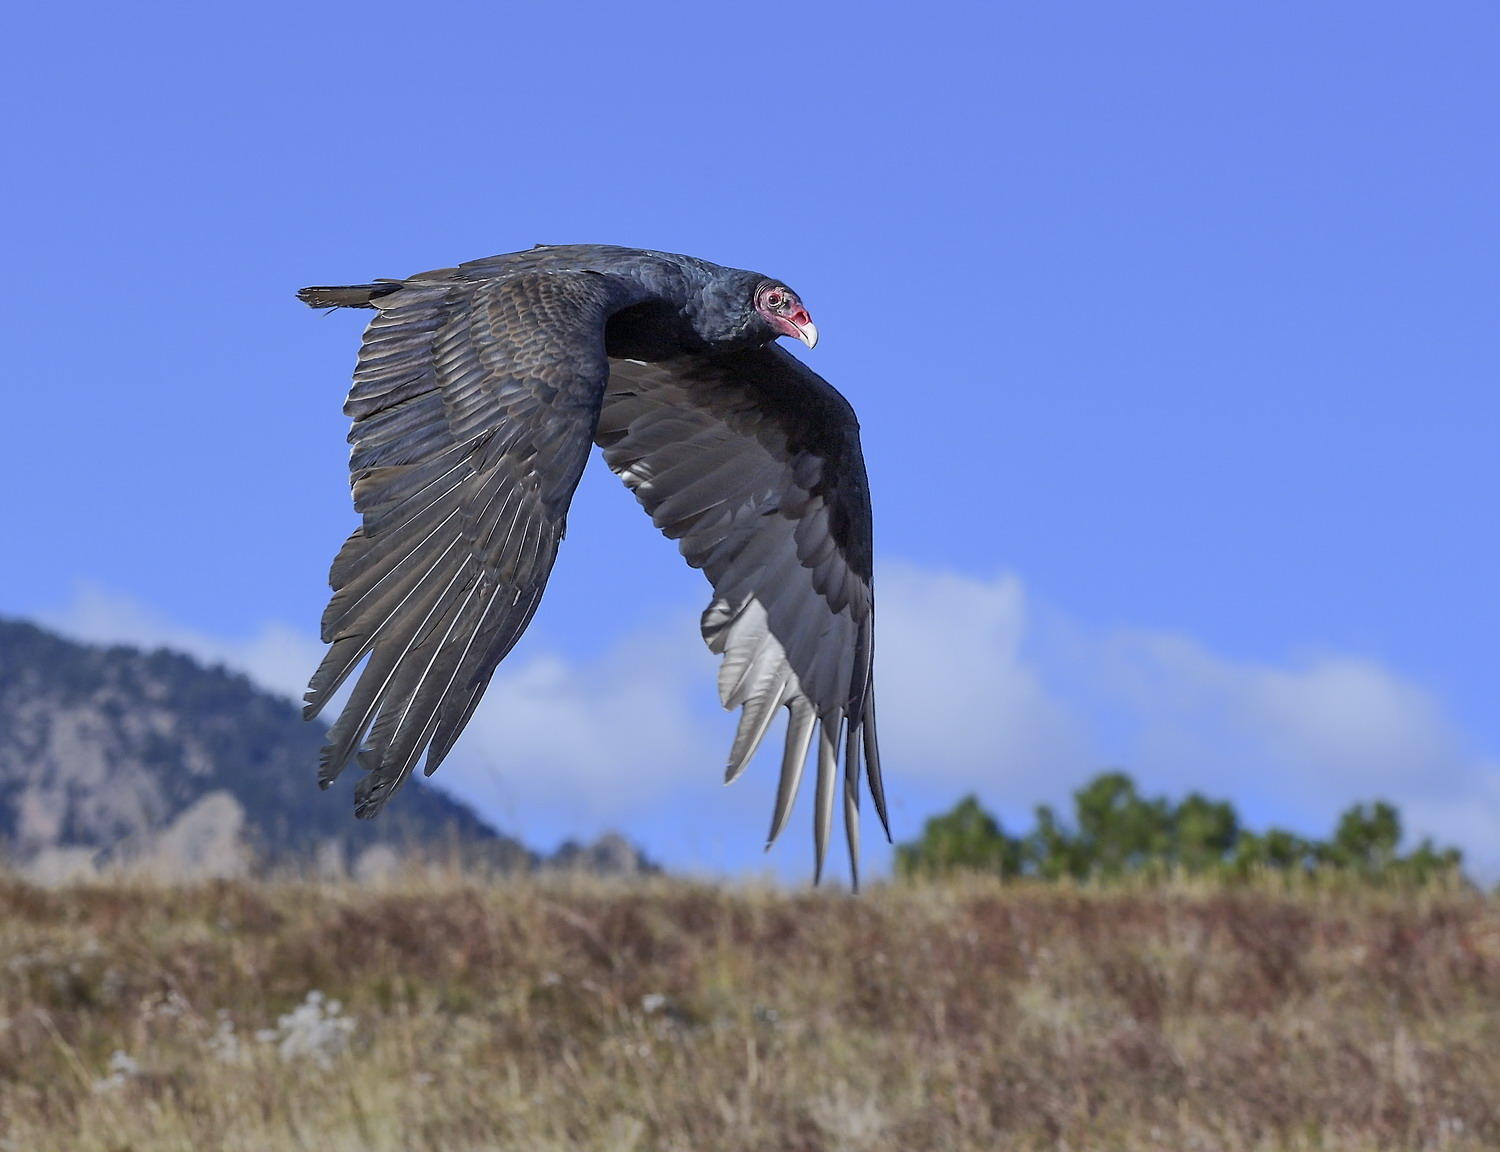 DSC_9941_1A3 - Turkey Vulture